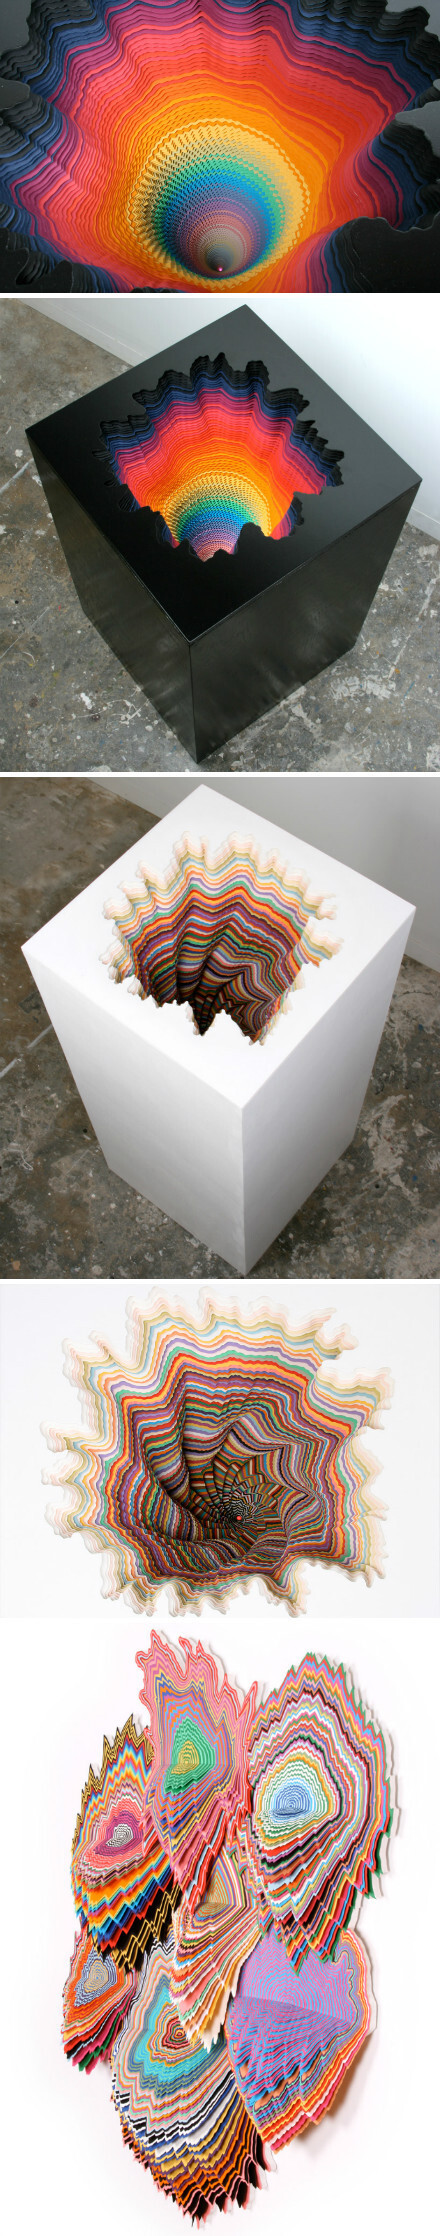 【剪纸雕塑】艺术家 Jen stark 将无限重复的图案和数学原理结合到作品中，创作了一系列极其复杂色彩艳丽的纸雕作品。 平滑表面与渐变式下沉的对比